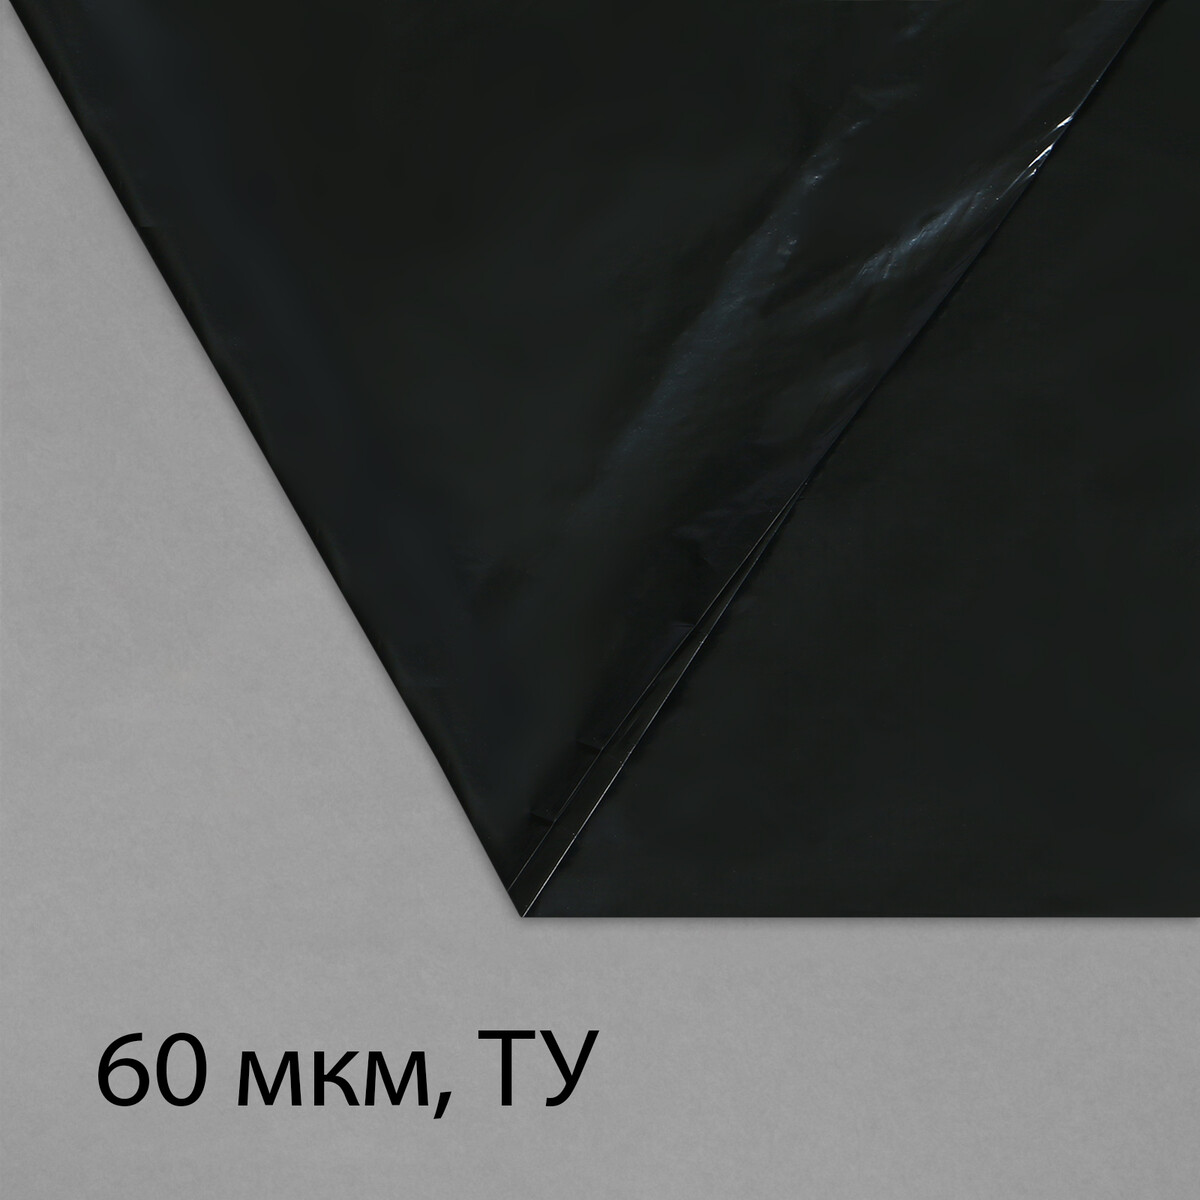 Пленка полиэтиленовая, техническая, толщина 60 мкм, 5 × 3 м, рукав (1,5 м × 2), черная, 2 сорт, эконом 50 % пленка полиэтиленовая техническая 80 мкм черная длина 10 м ширина 3 м рукав 1 5 м × 2 эконом 50%